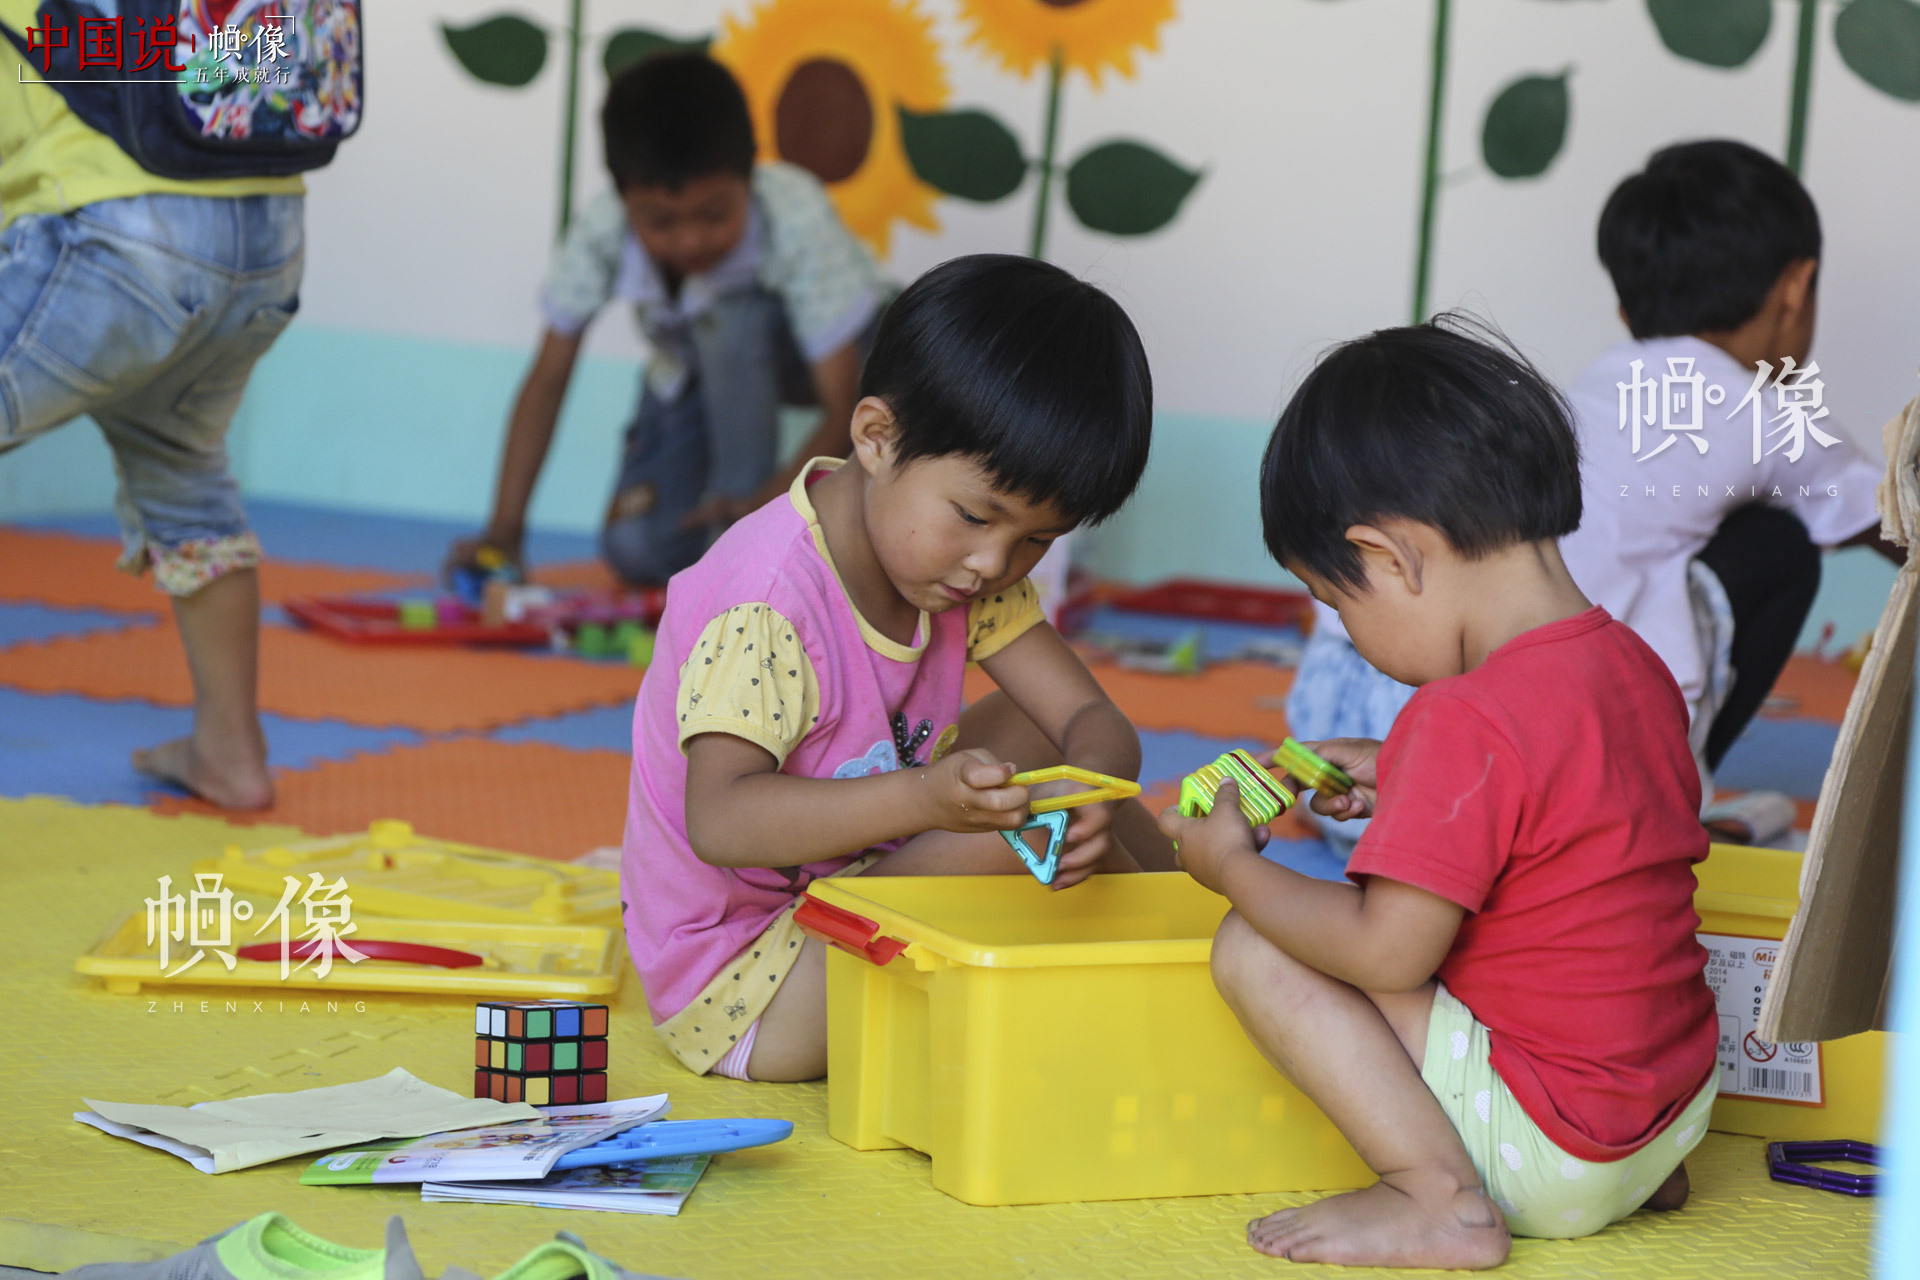 “儿童快乐家园”是全国妇联、中国儿童少年基金会于2014年面向留守儿童集中的村镇社区推出的公益项目。目前，项目通过筹集社会爱心资金和中央专项彩票公益金支持，已在全国30个省（区、市）和新疆生产建设兵团捐建了874个“儿童快乐家园”，惠及40余万儿童。中国网记者 黄富友 摄